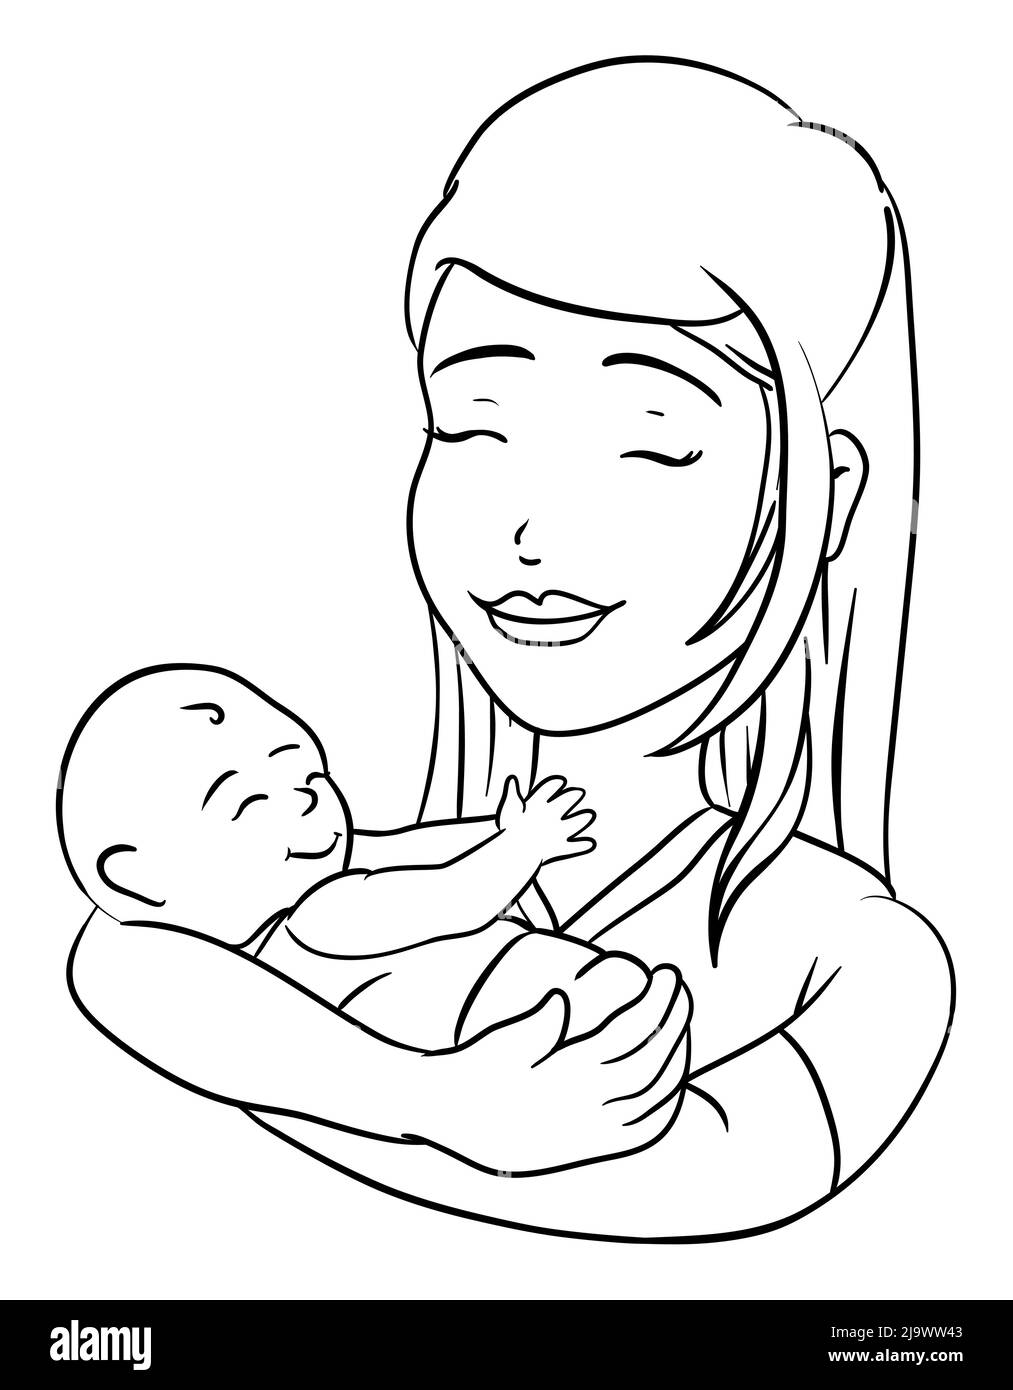 Joli dessin dans des contours représentant une scène charmante: Jeune mère souriante portant son babe nouveau-né dans les bras. Illustration de la coloration sur fond blanc Illustration de Vecteur